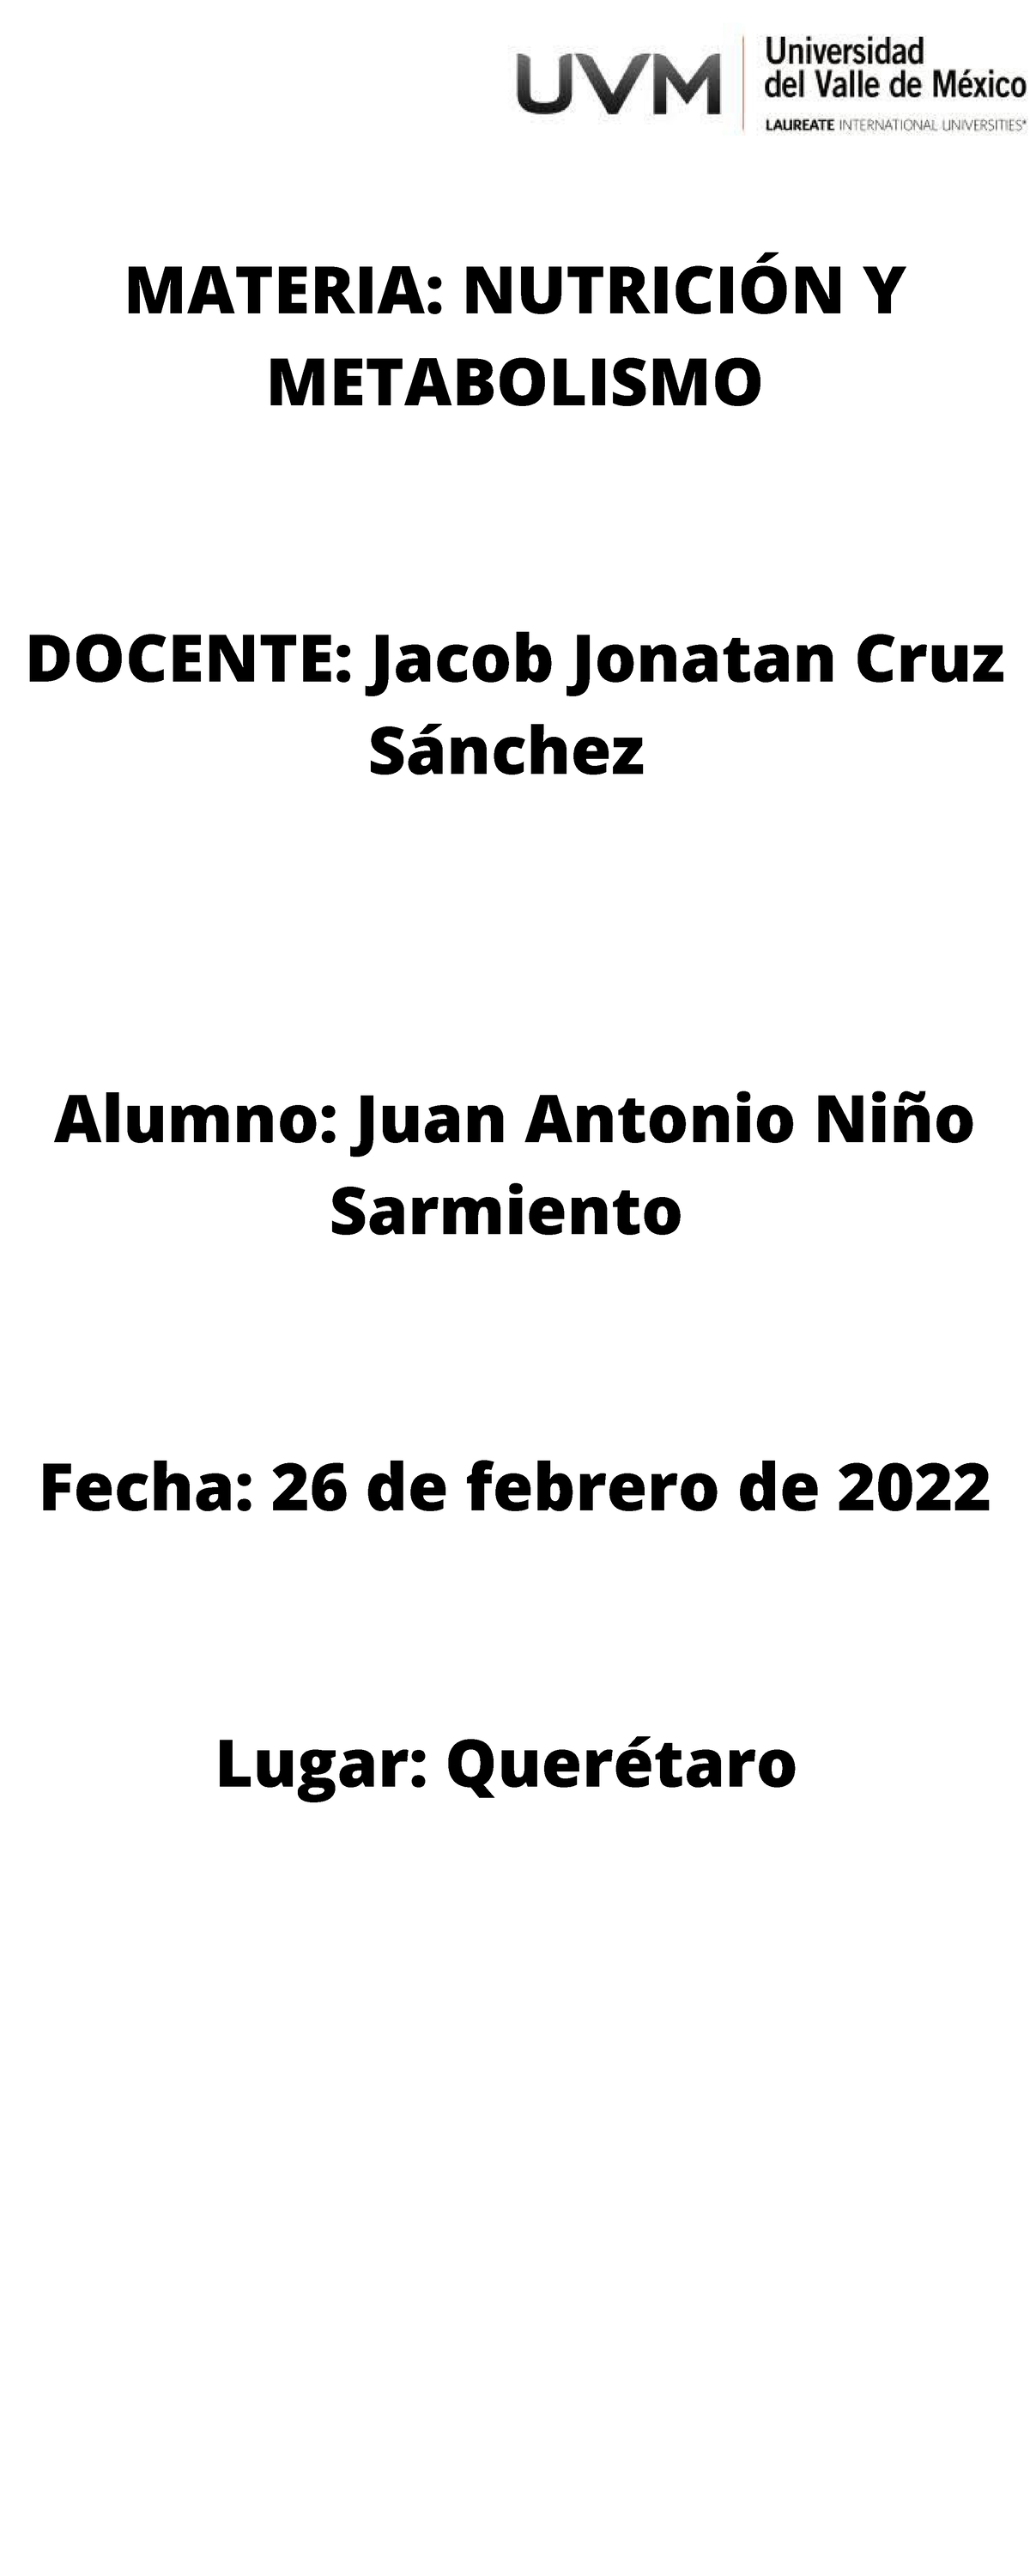 A4 Jans Apuntes Materia NutriciÓn Y Metabolismo Docente Jacob Jonatan Cruz Sánchez Alumno 7373